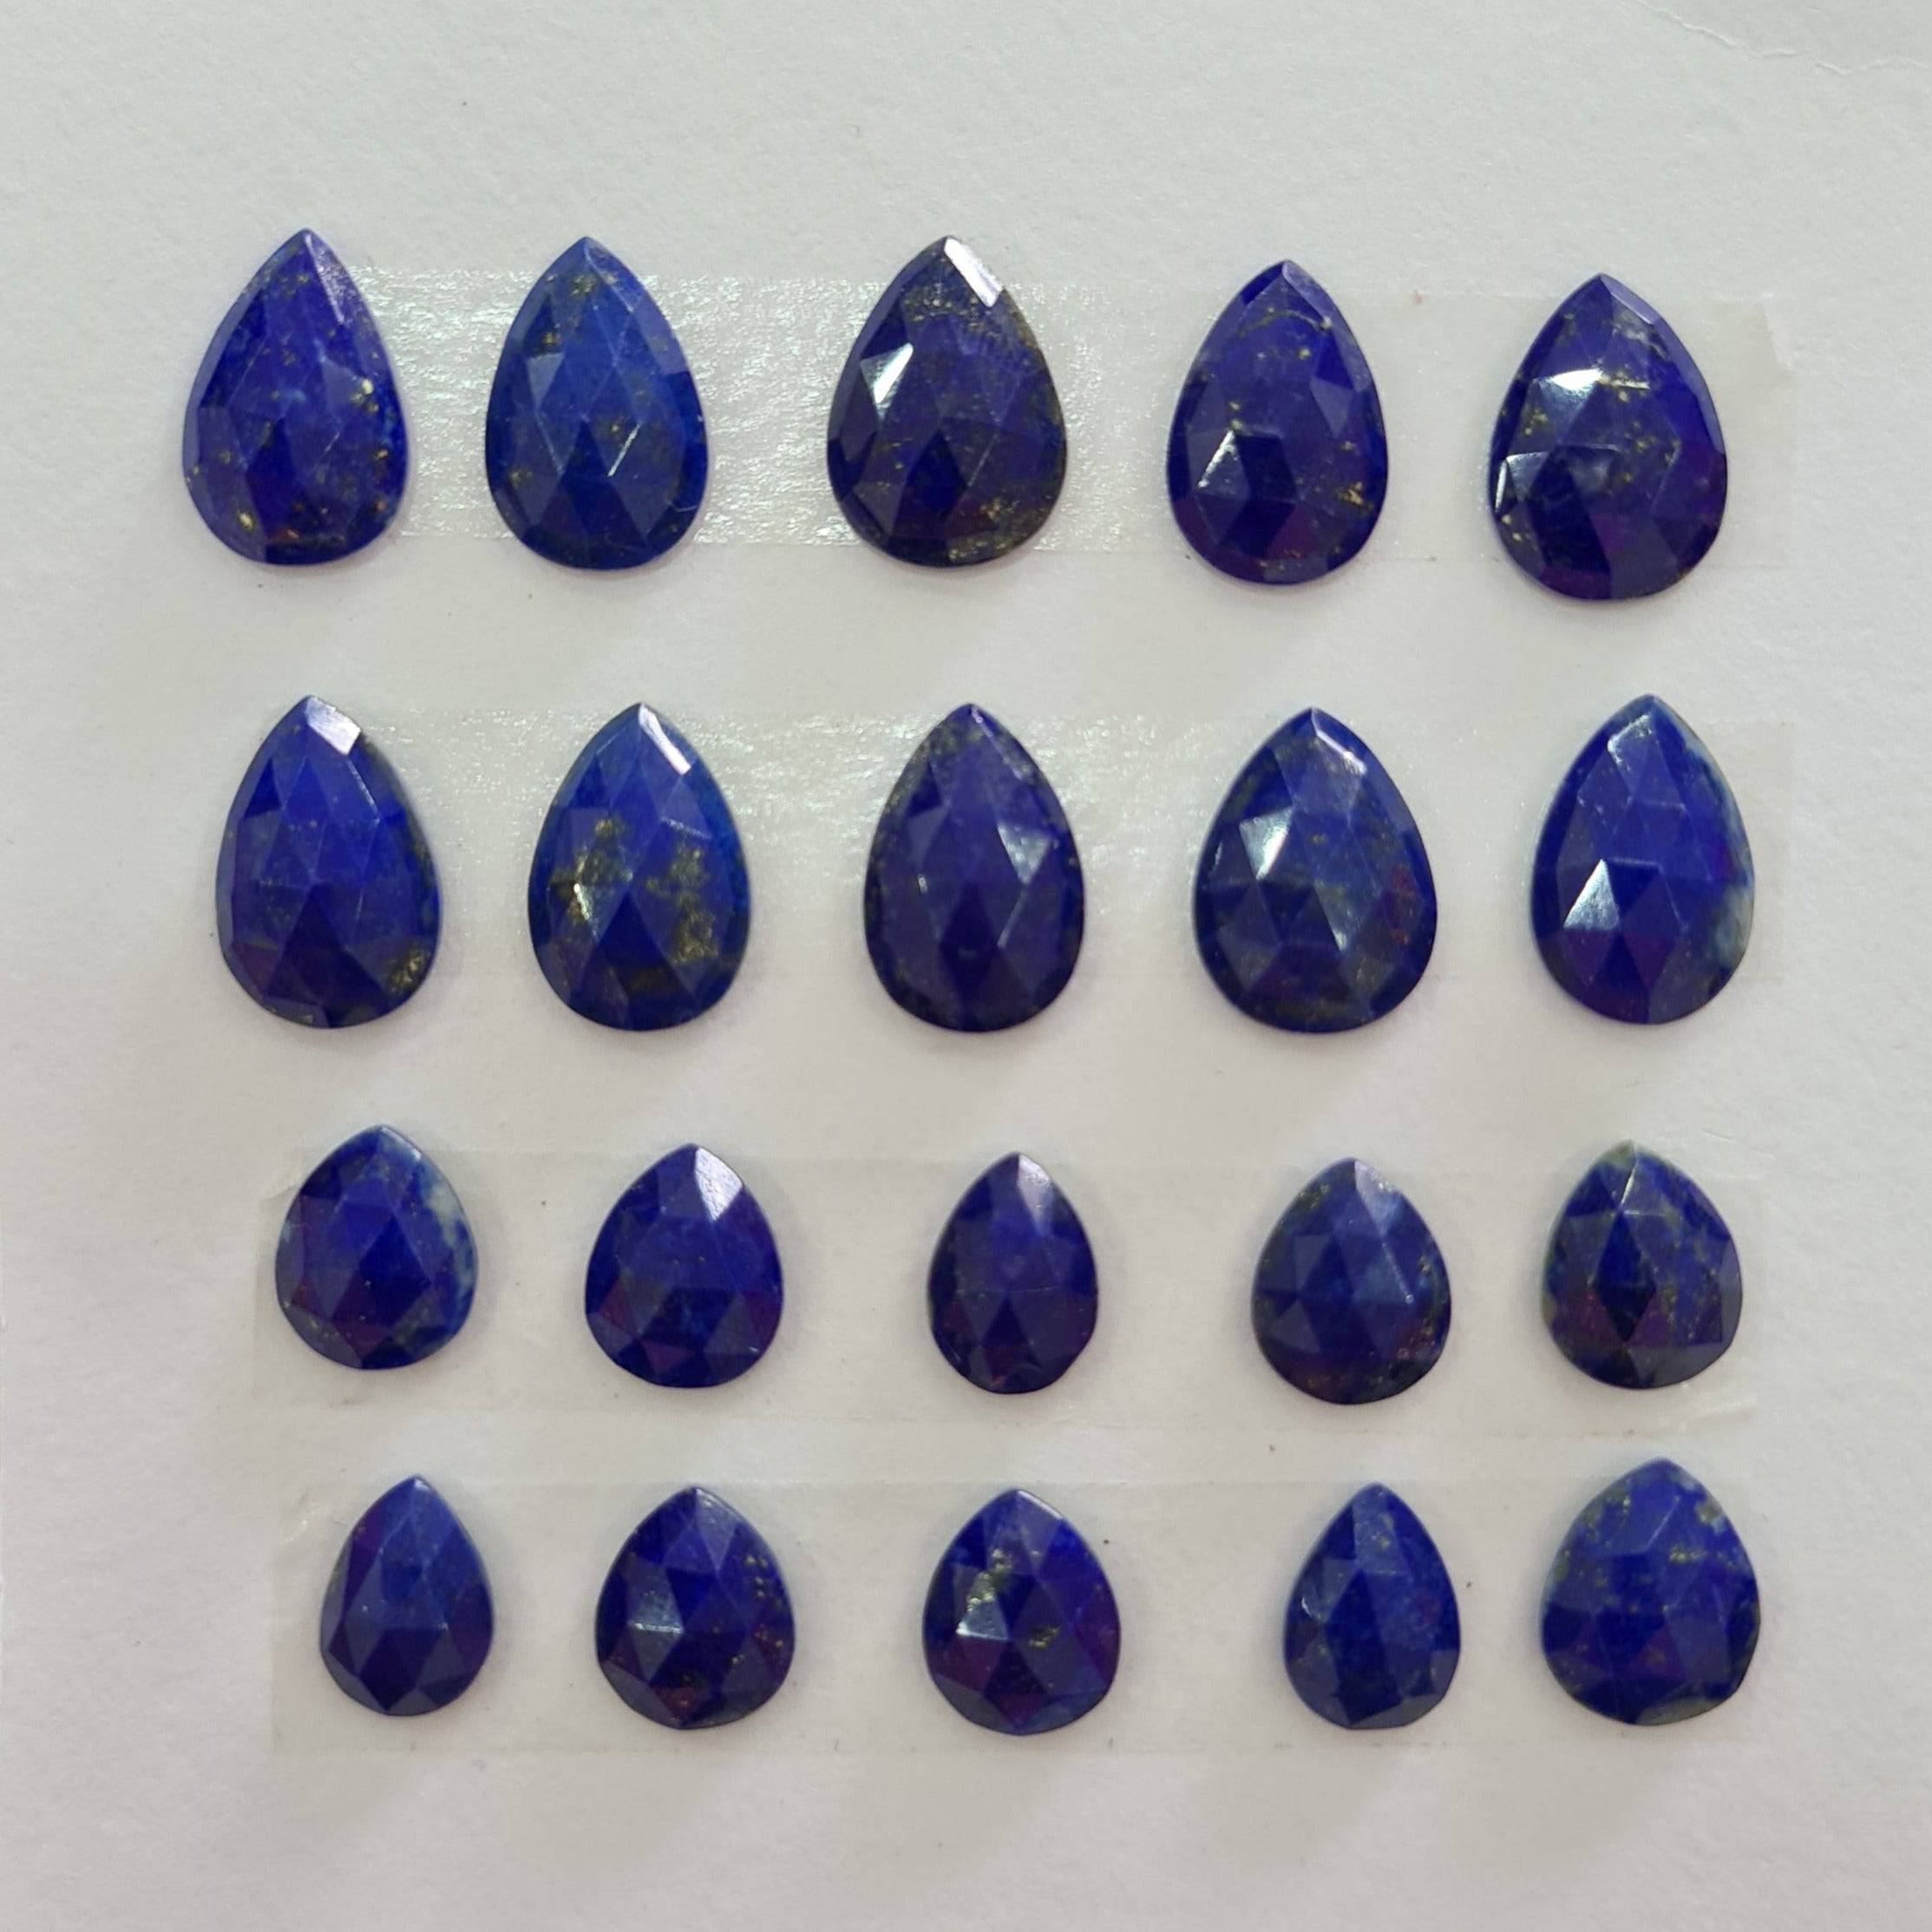 20 Pcs Natural Lapis Lazuli Rosecut Gemstones | Pear Shape, 11-15mm Size, - The LabradoriteKing